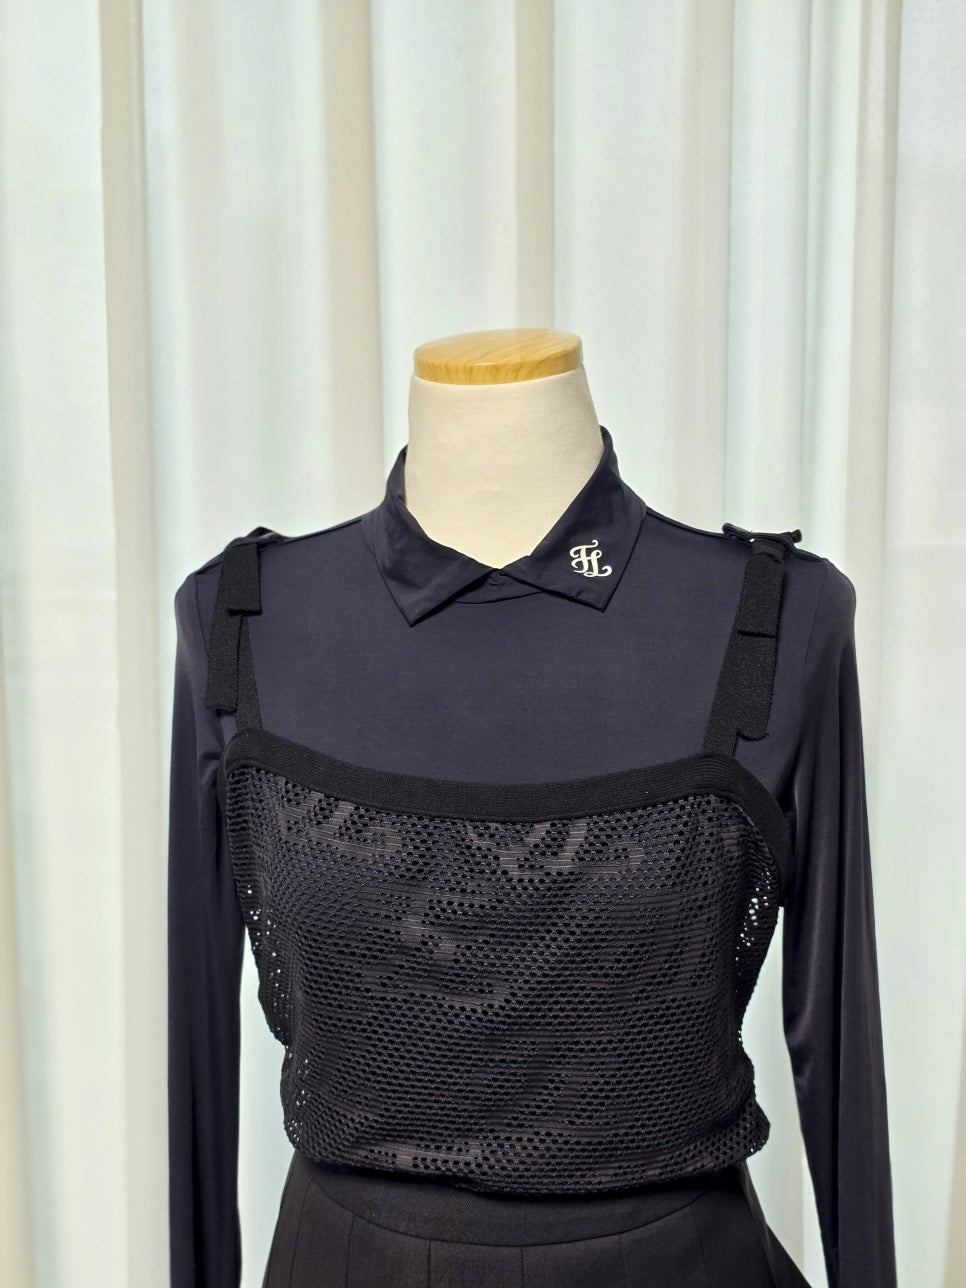 여성골프웨어 페어라이어 냉감티셔츠 여자 골프복 코디 패션위드펑션